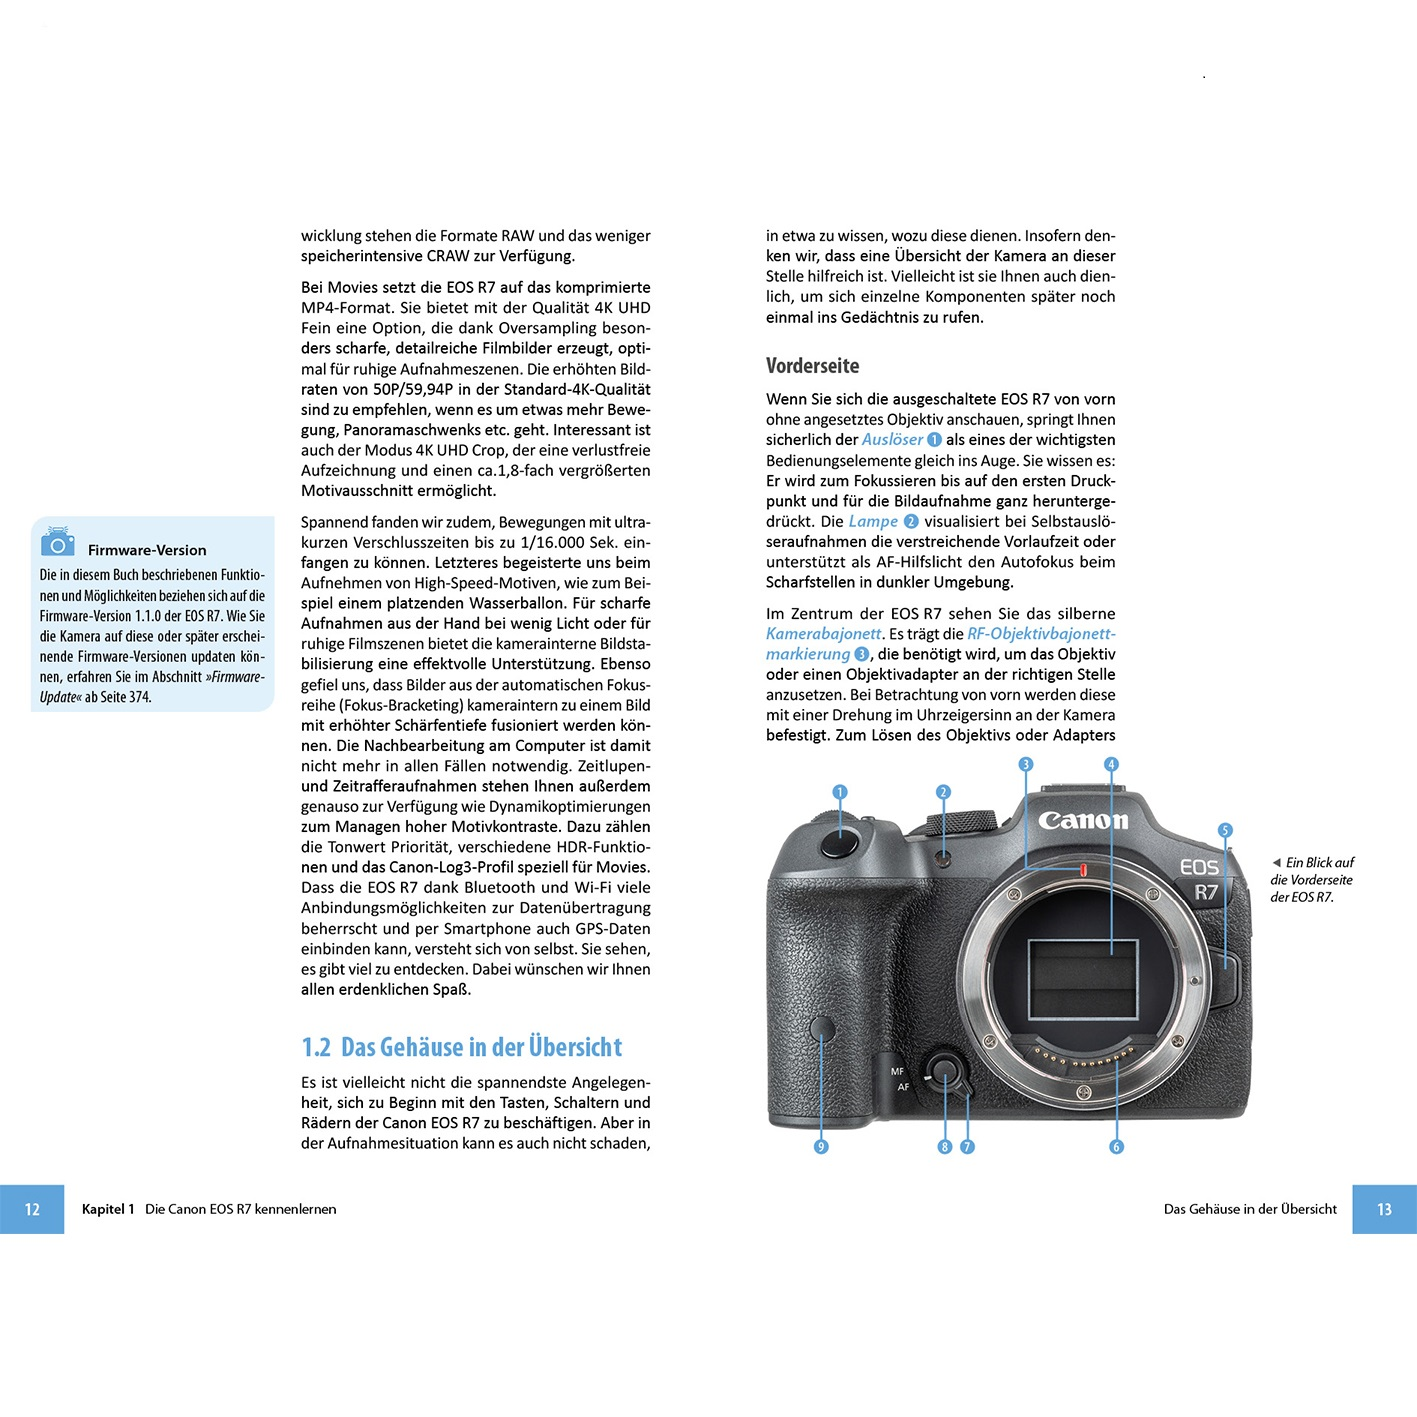 Canon EOS R7 - Das Kamera! Praxisbuch umfangreiche Ihrer zu